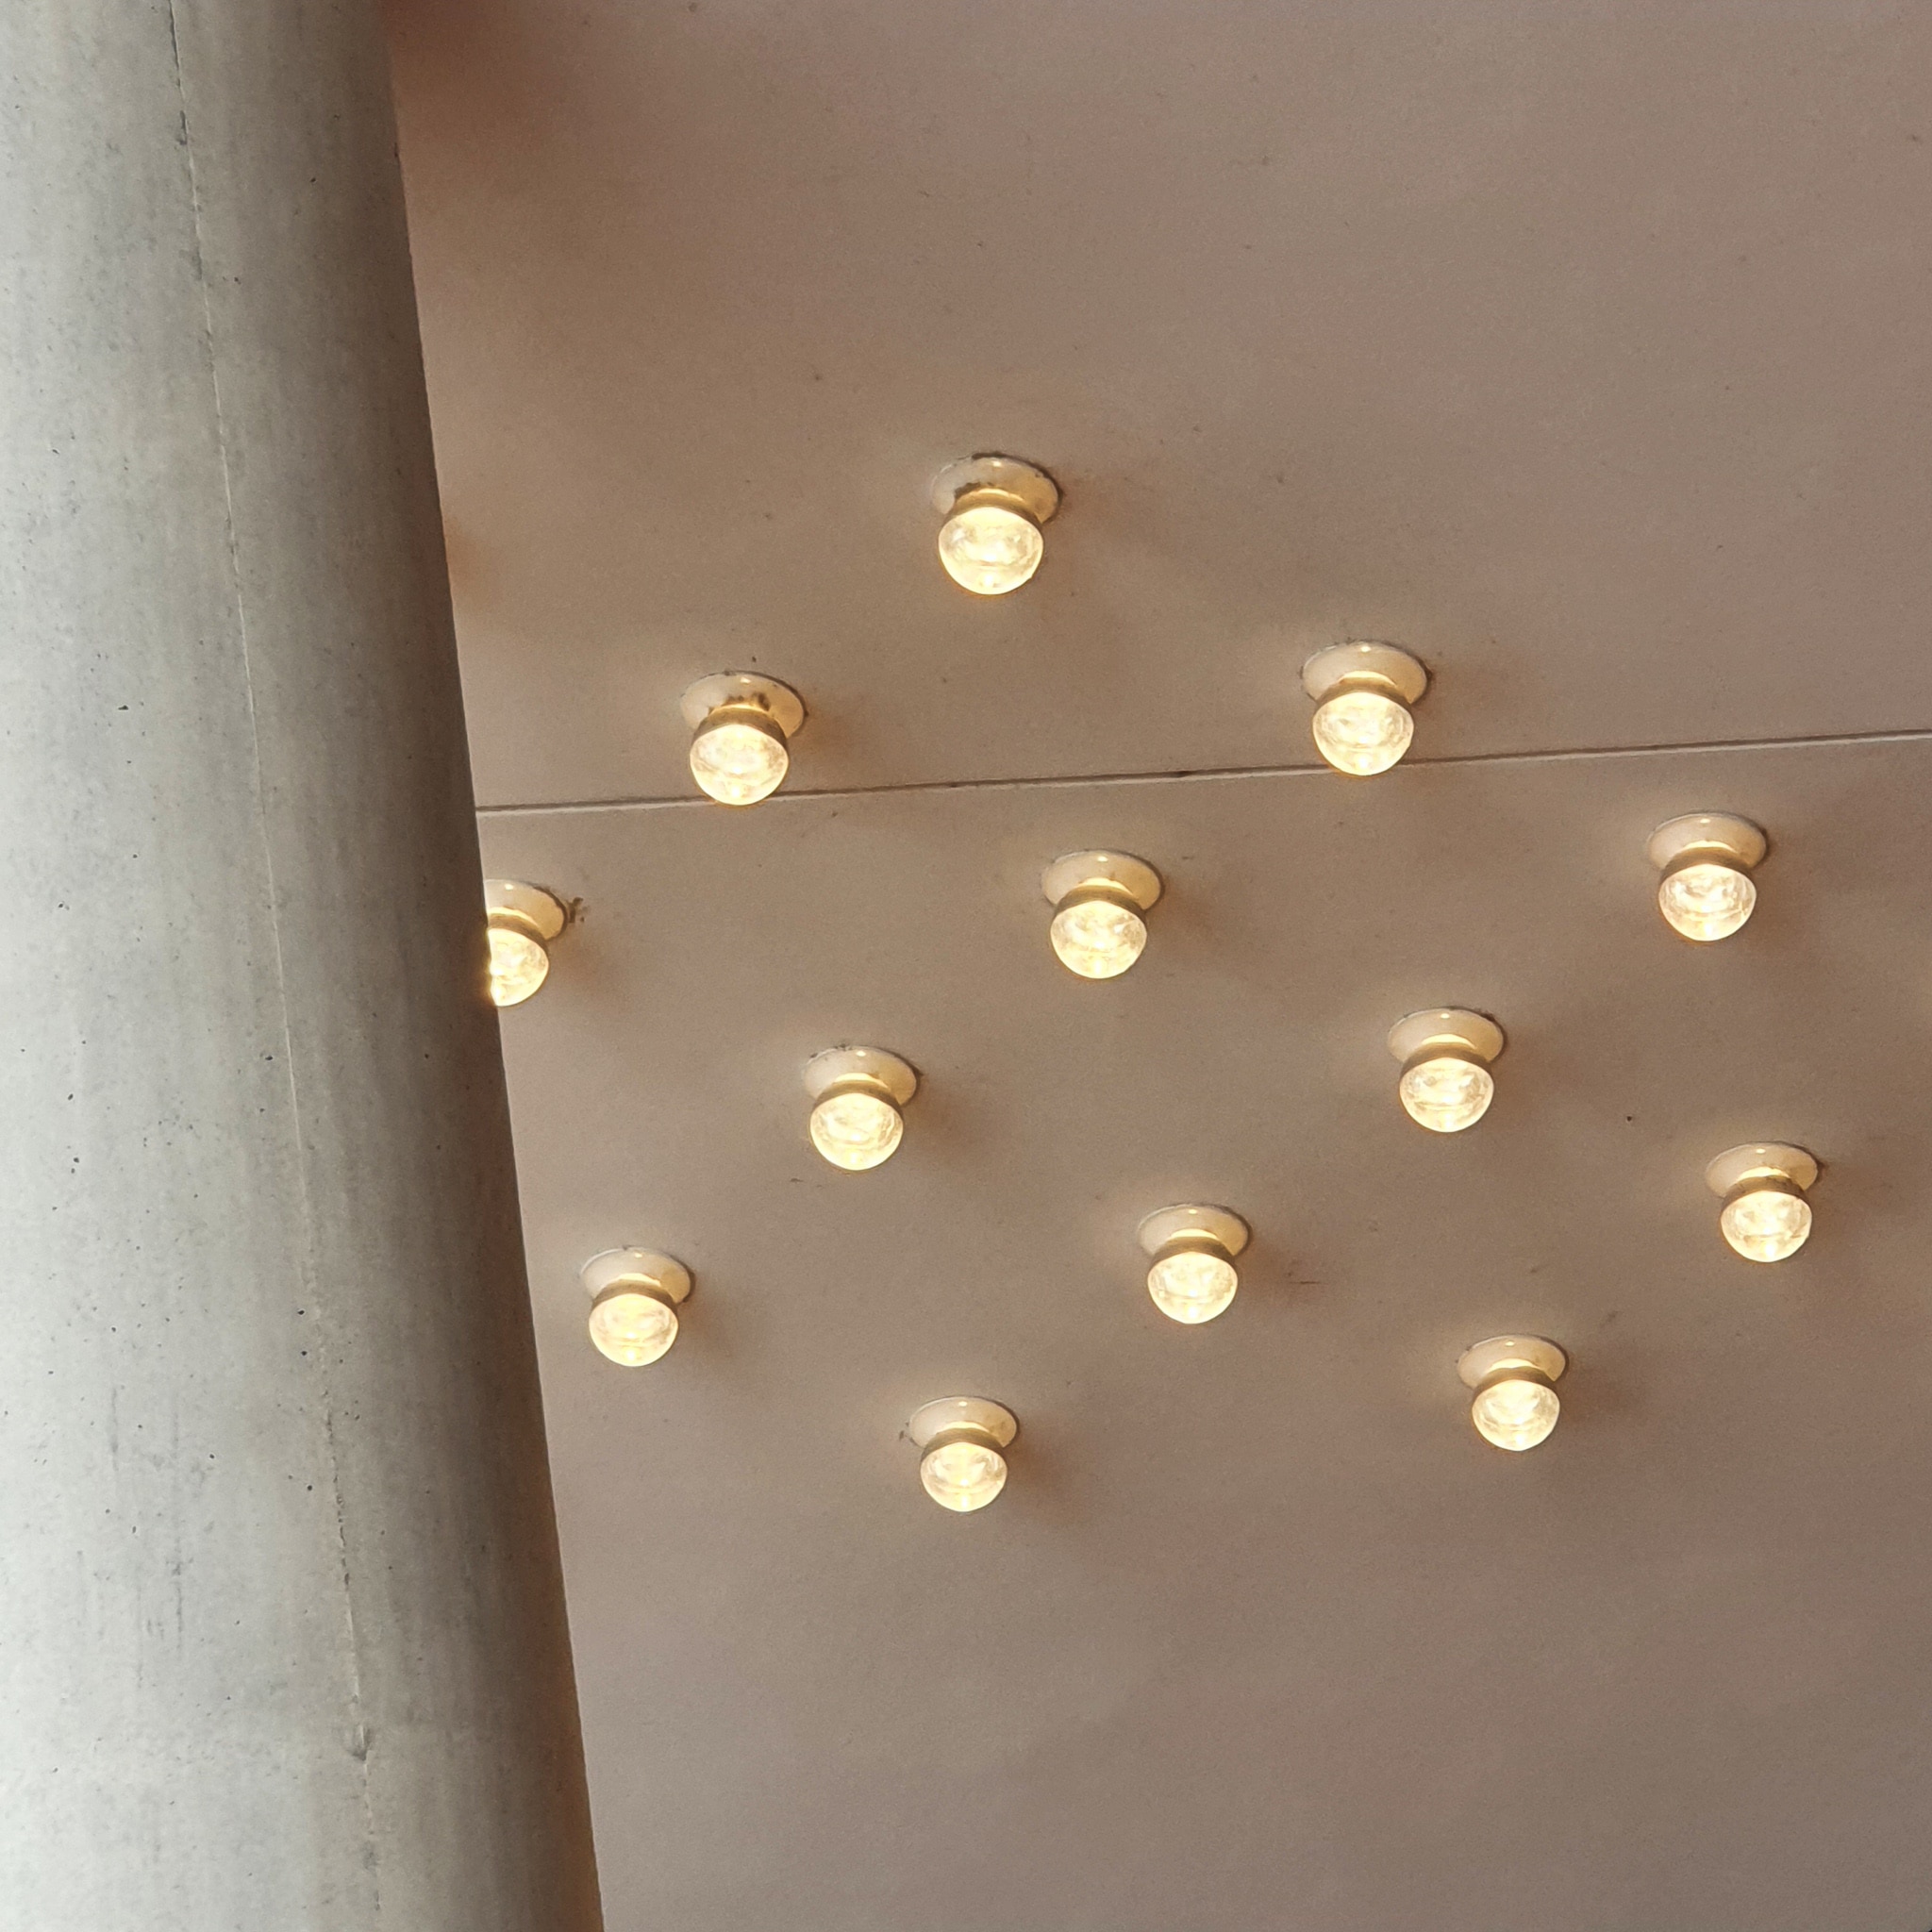 Detail Elbphilharmonie, Lichter an der Decke